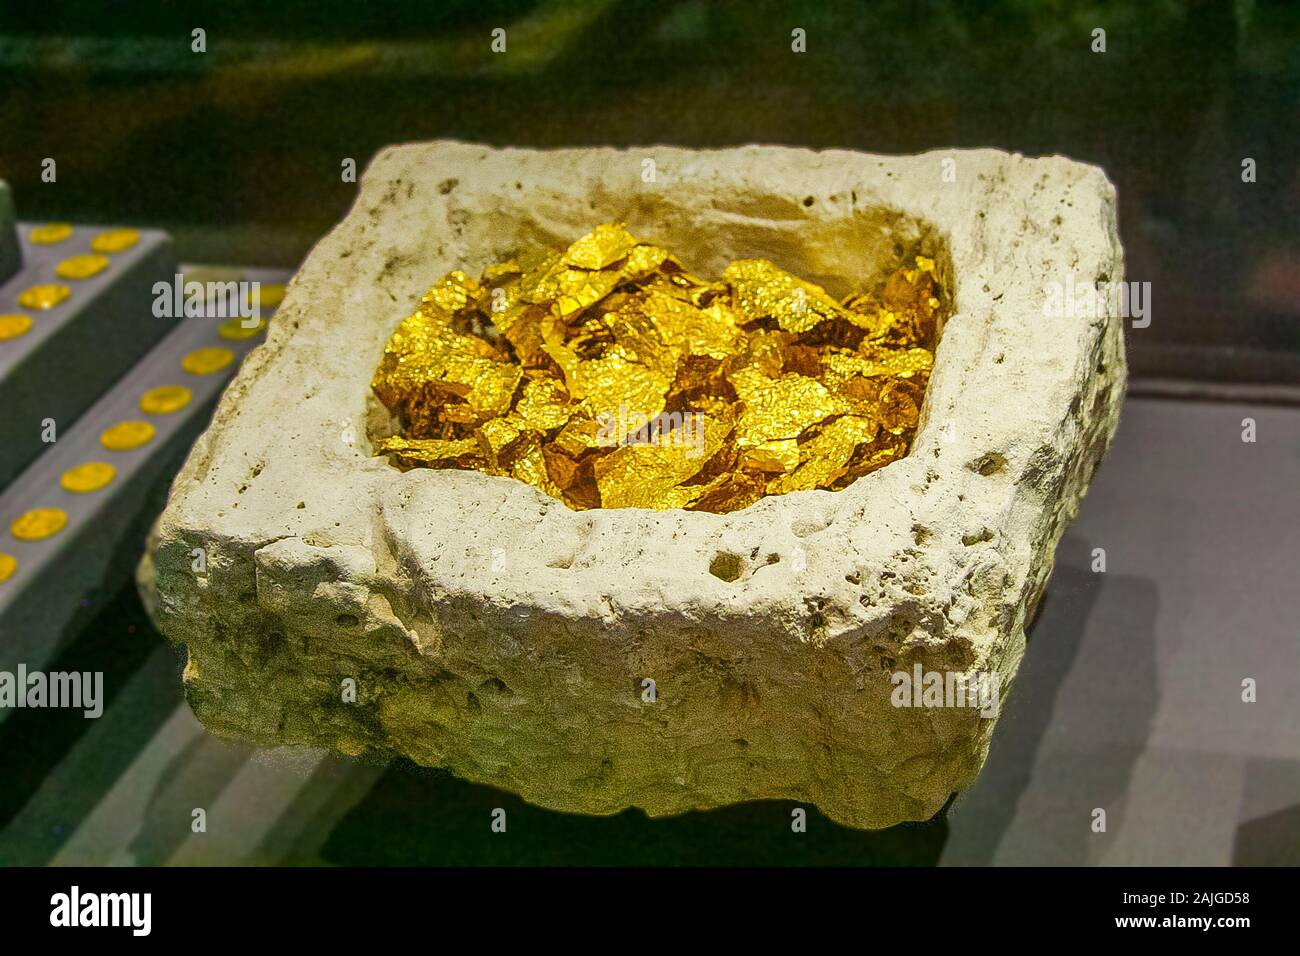 Egypte, Alexandrie, Musée National, des pièces d'or. Trouvés lors de fouilles sous-marines de Franck Goddio et affiché dans ses expositions. Banque D'Images